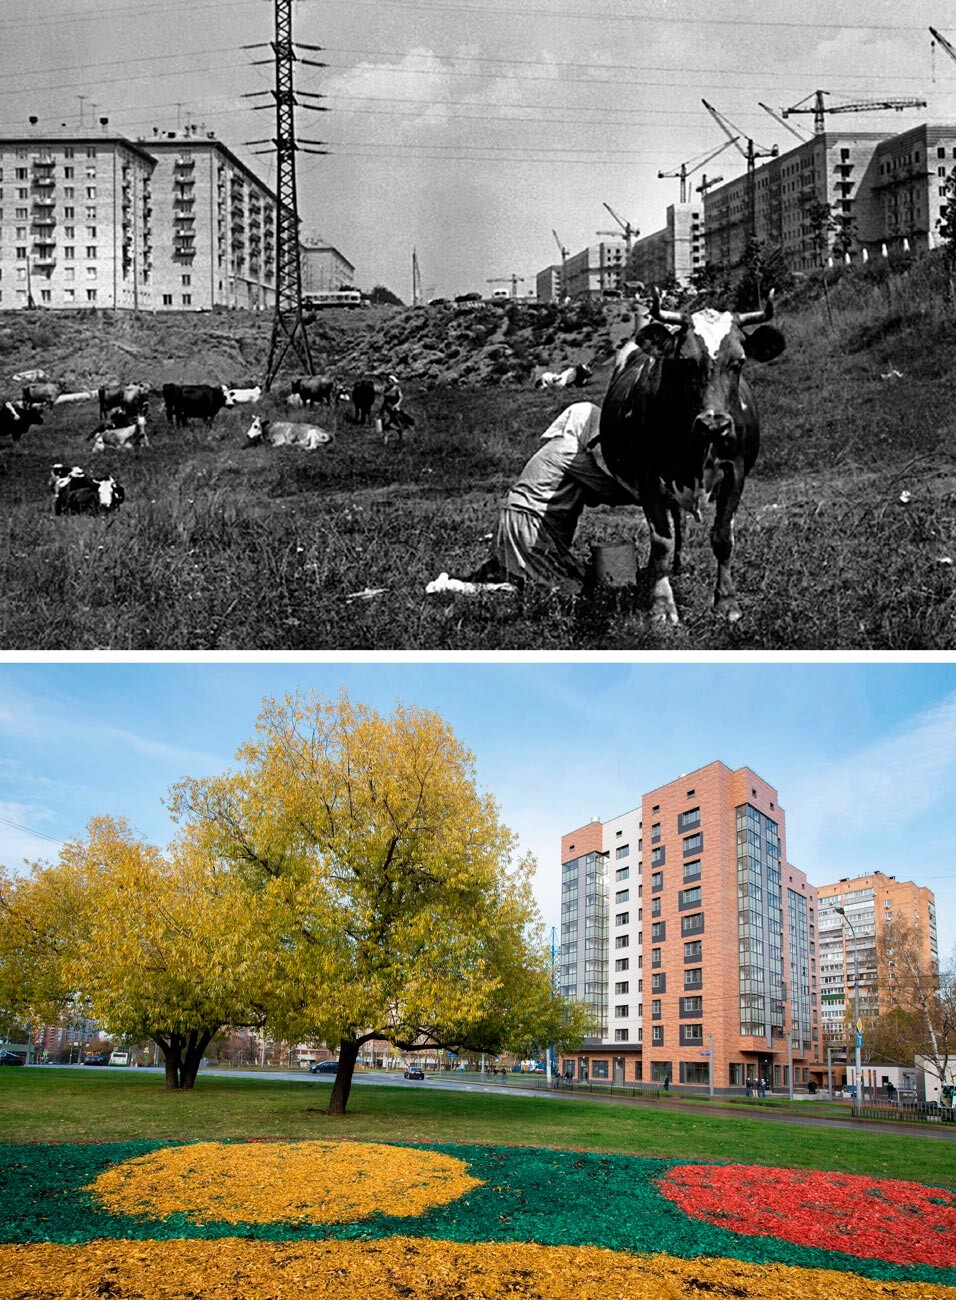 Esquerda: Aldeia de Tcheriomuchki, 1954; Direita: Prédios novos em Tcheriomuchki, construídos no lugar de antigos edifícios de painéis, 2020